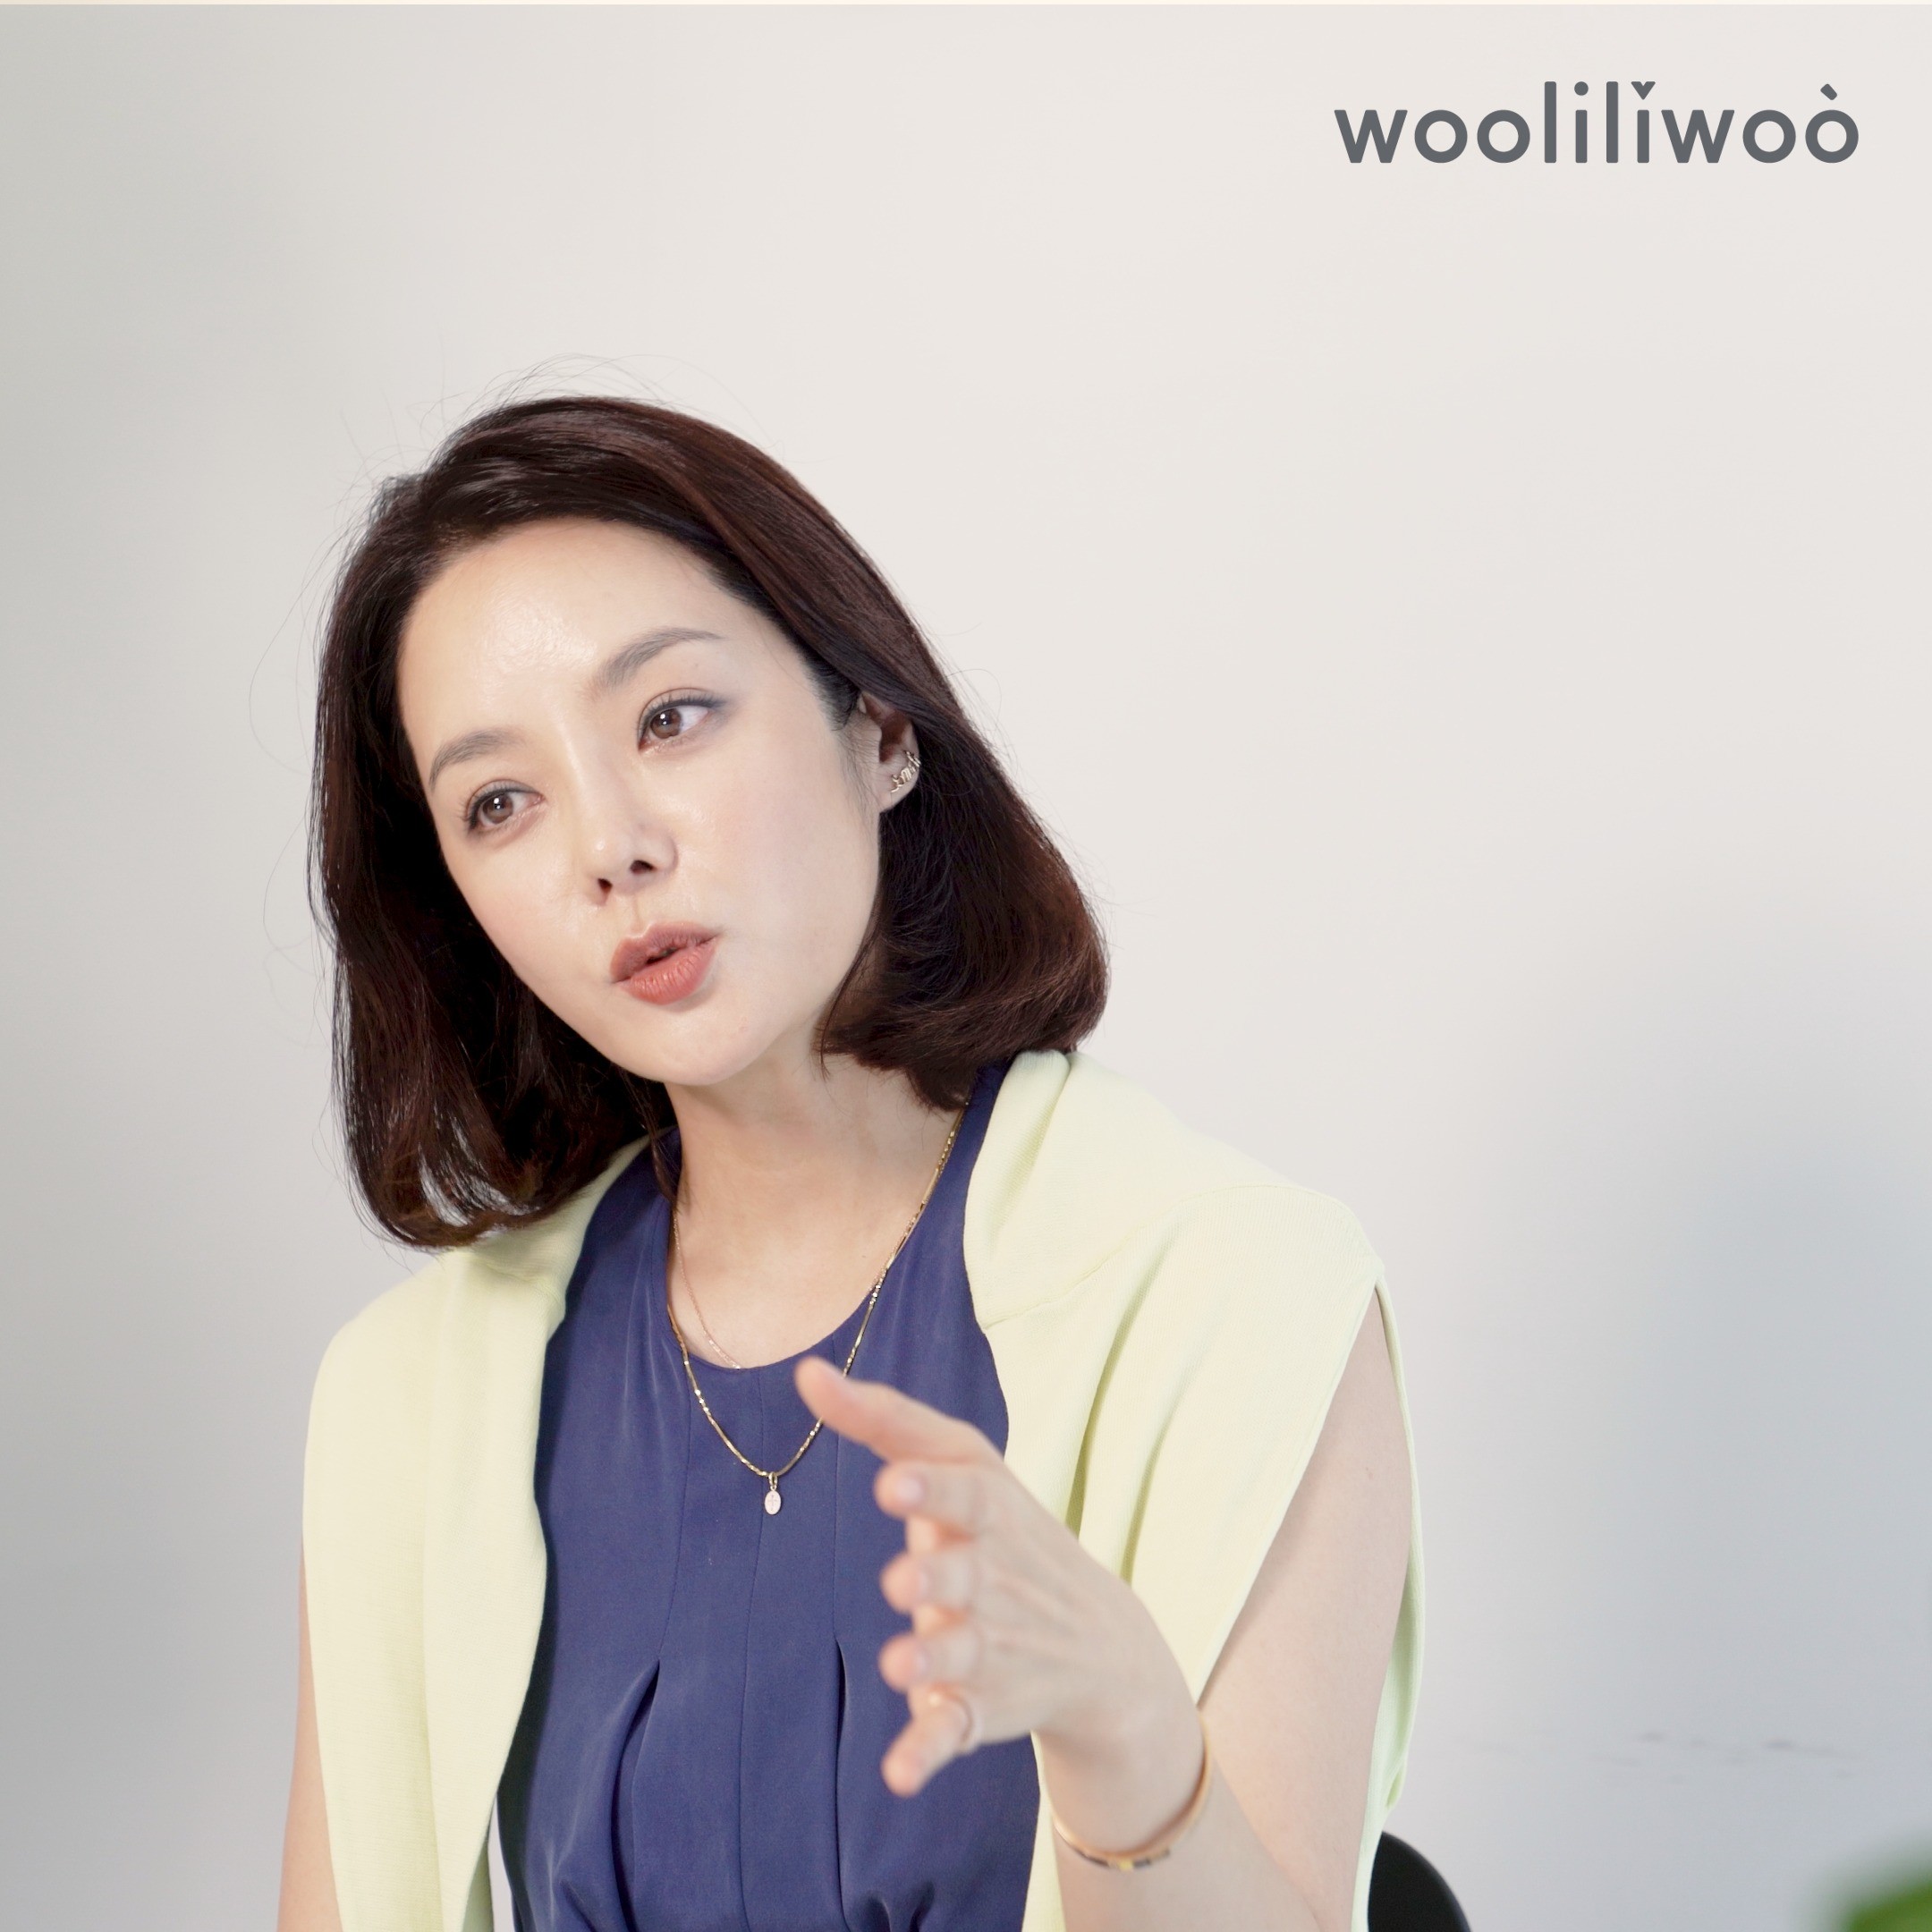 포트폴리오-[기획,촬영,편집]wooliliwoo 회사 소개 영상